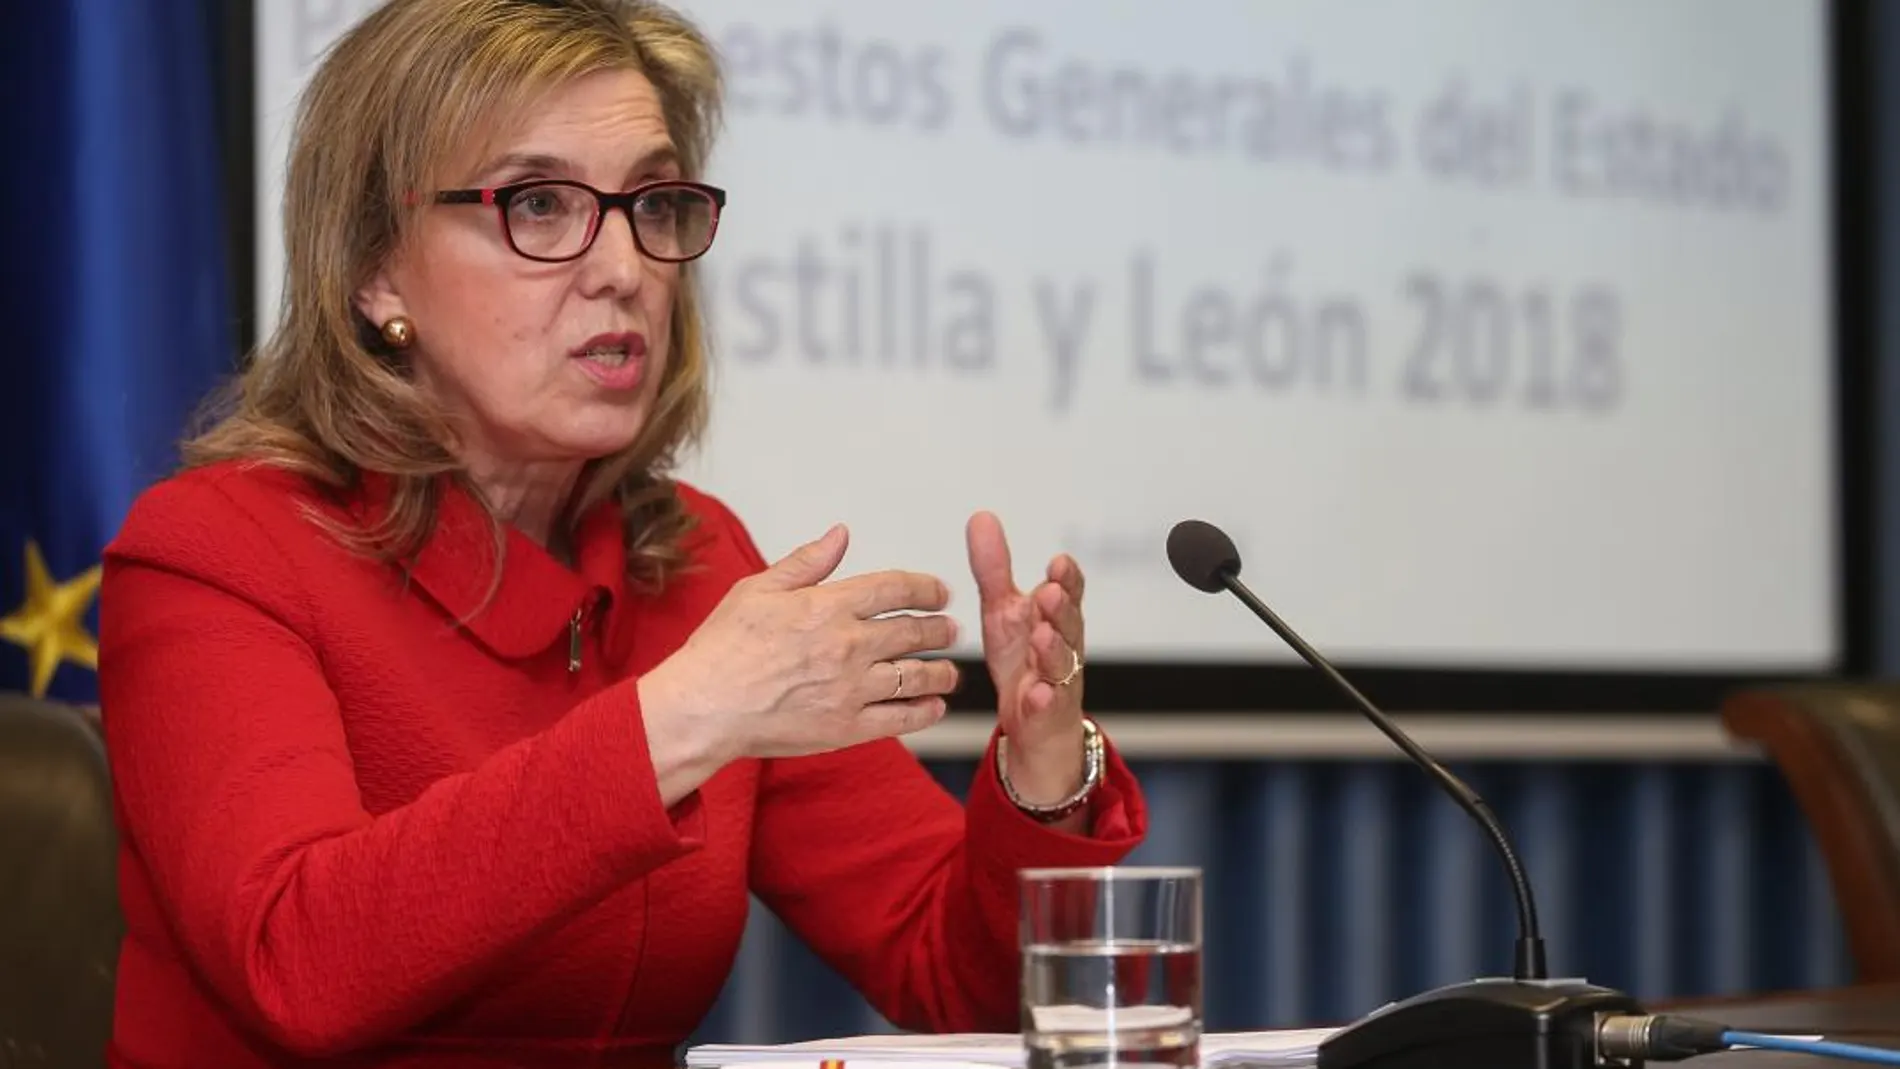 La delegada del Gobierno de España en Castilla y León, María José Salgueiro, presenta las partidas destinadas a la Comunidad